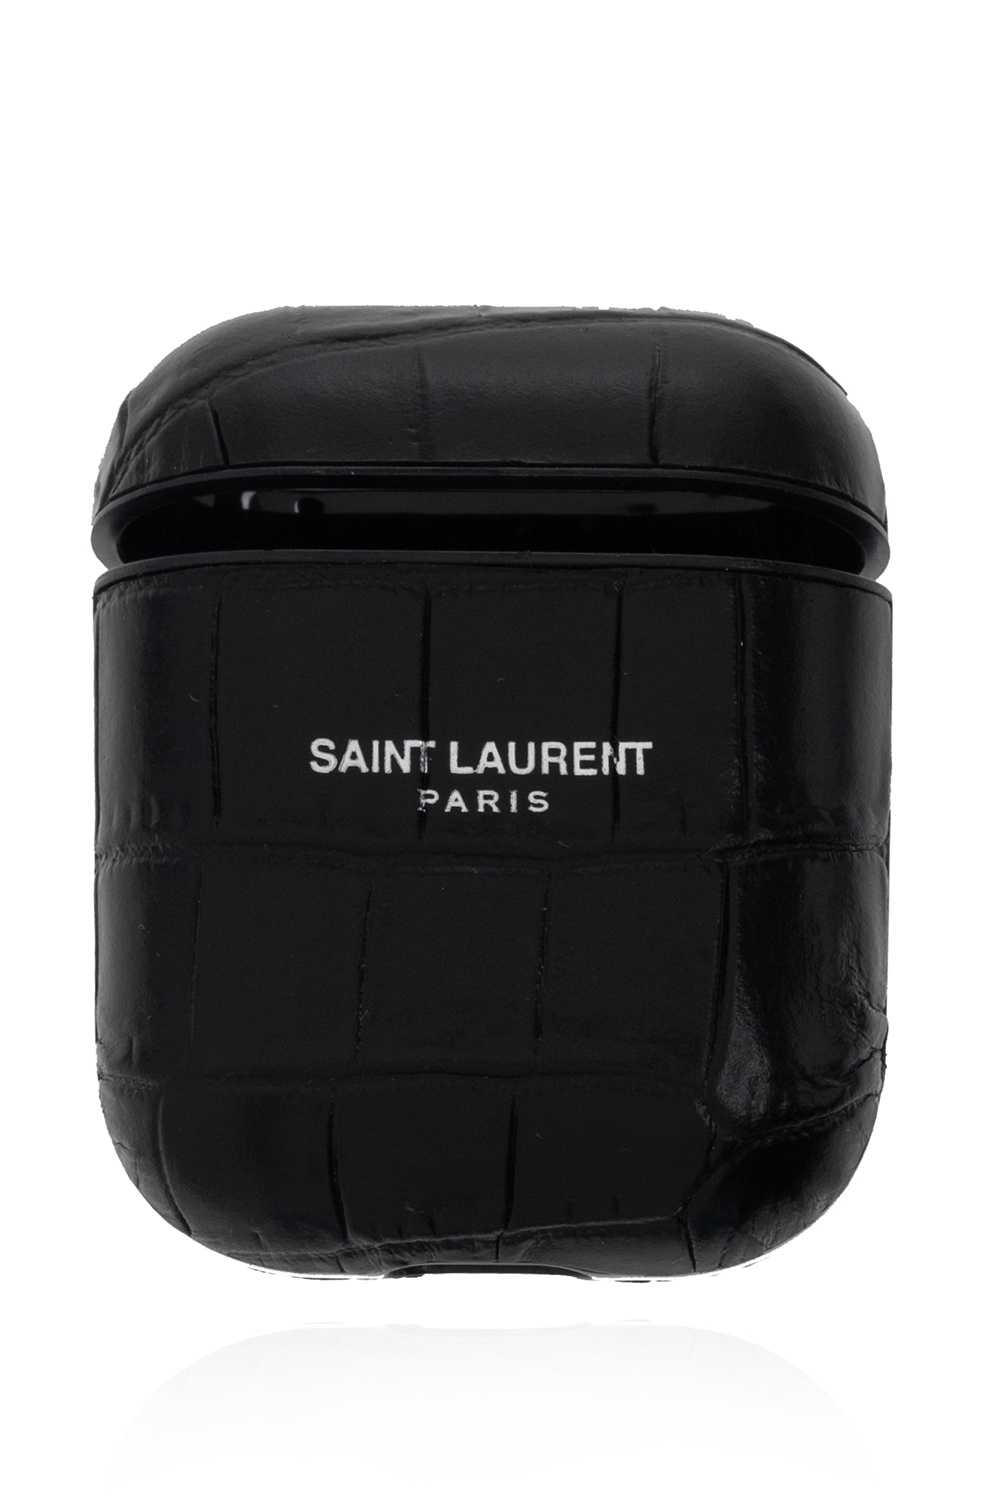 Saint Laurent Saint Laurent lamé chevron tie